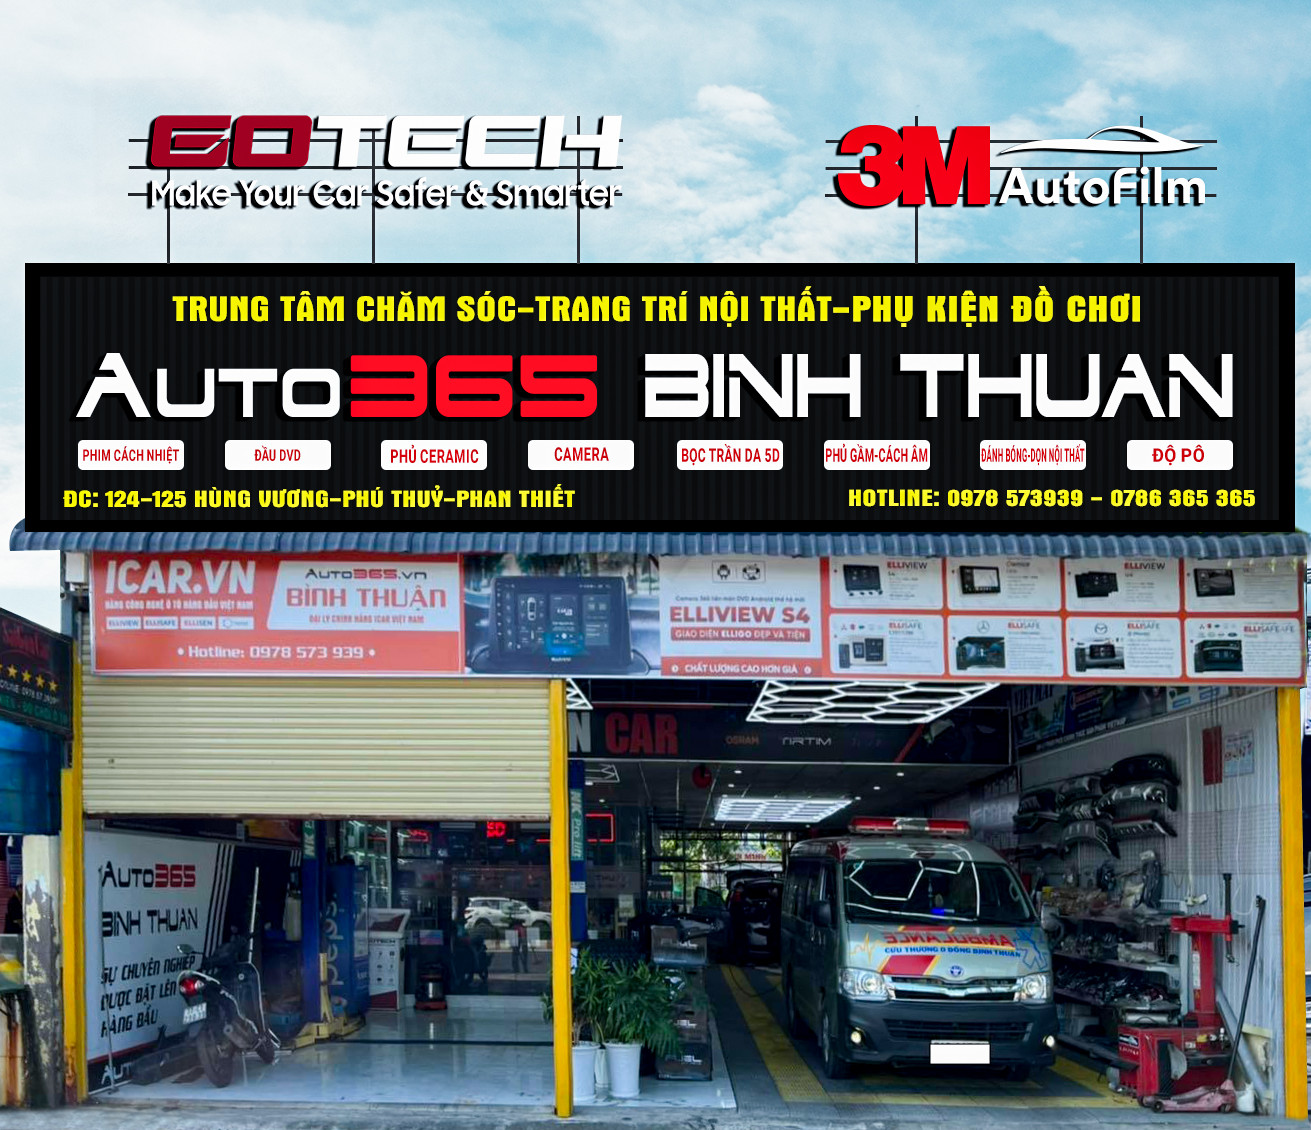 Auto365 Bình Thuận - Hỗ trợ đèn tăng sáng cho “chuyến xe 0 đồng” Việt Nam